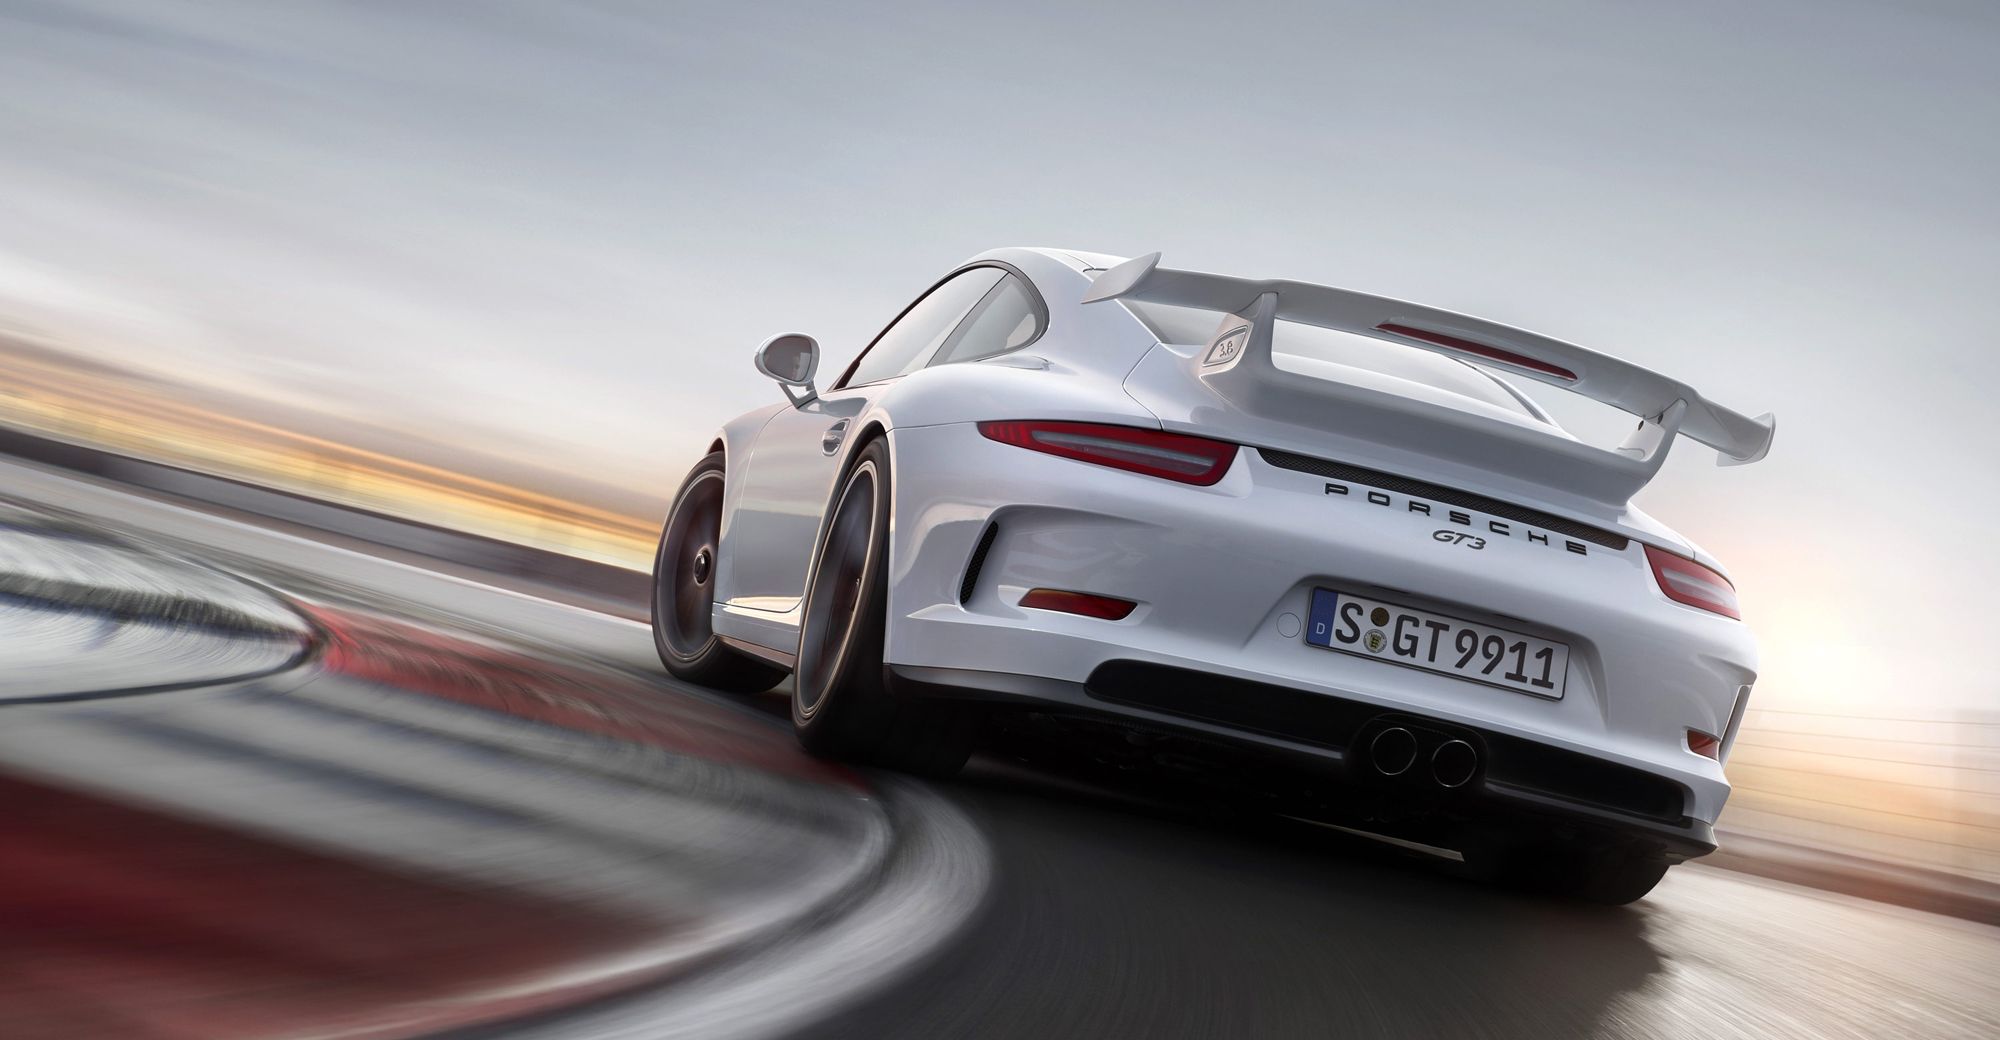 Porsche 911 Gt3 Hd , HD Wallpaper & Backgrounds